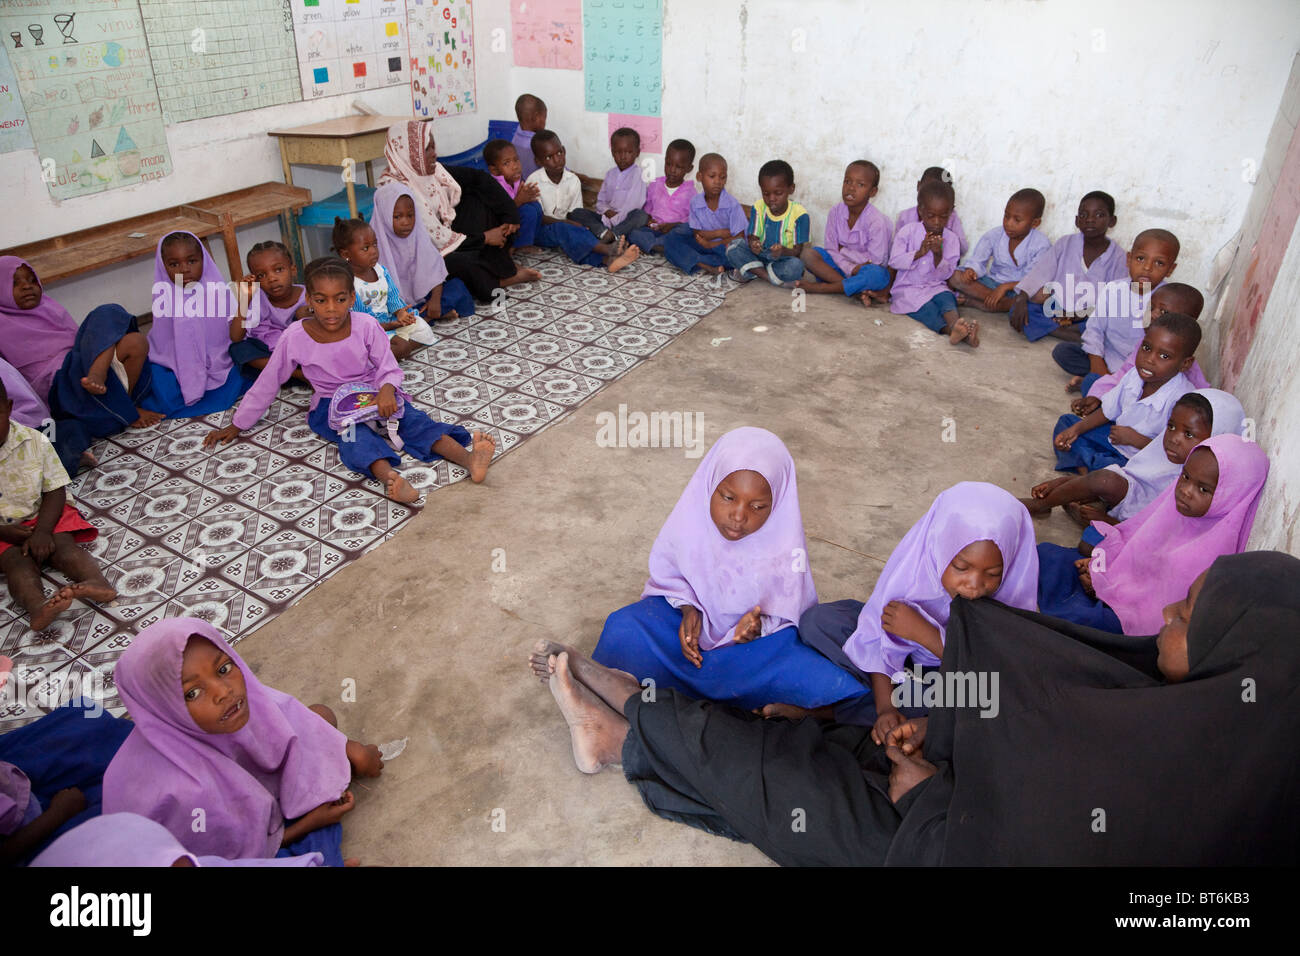 Jambiani, Sansibar, Tansania. Grundschule Unterricht, Schülerinnen und Schüler. Die Schüler sitzen auf dem Boden und die Schule hat keine Möbel. Stockfoto